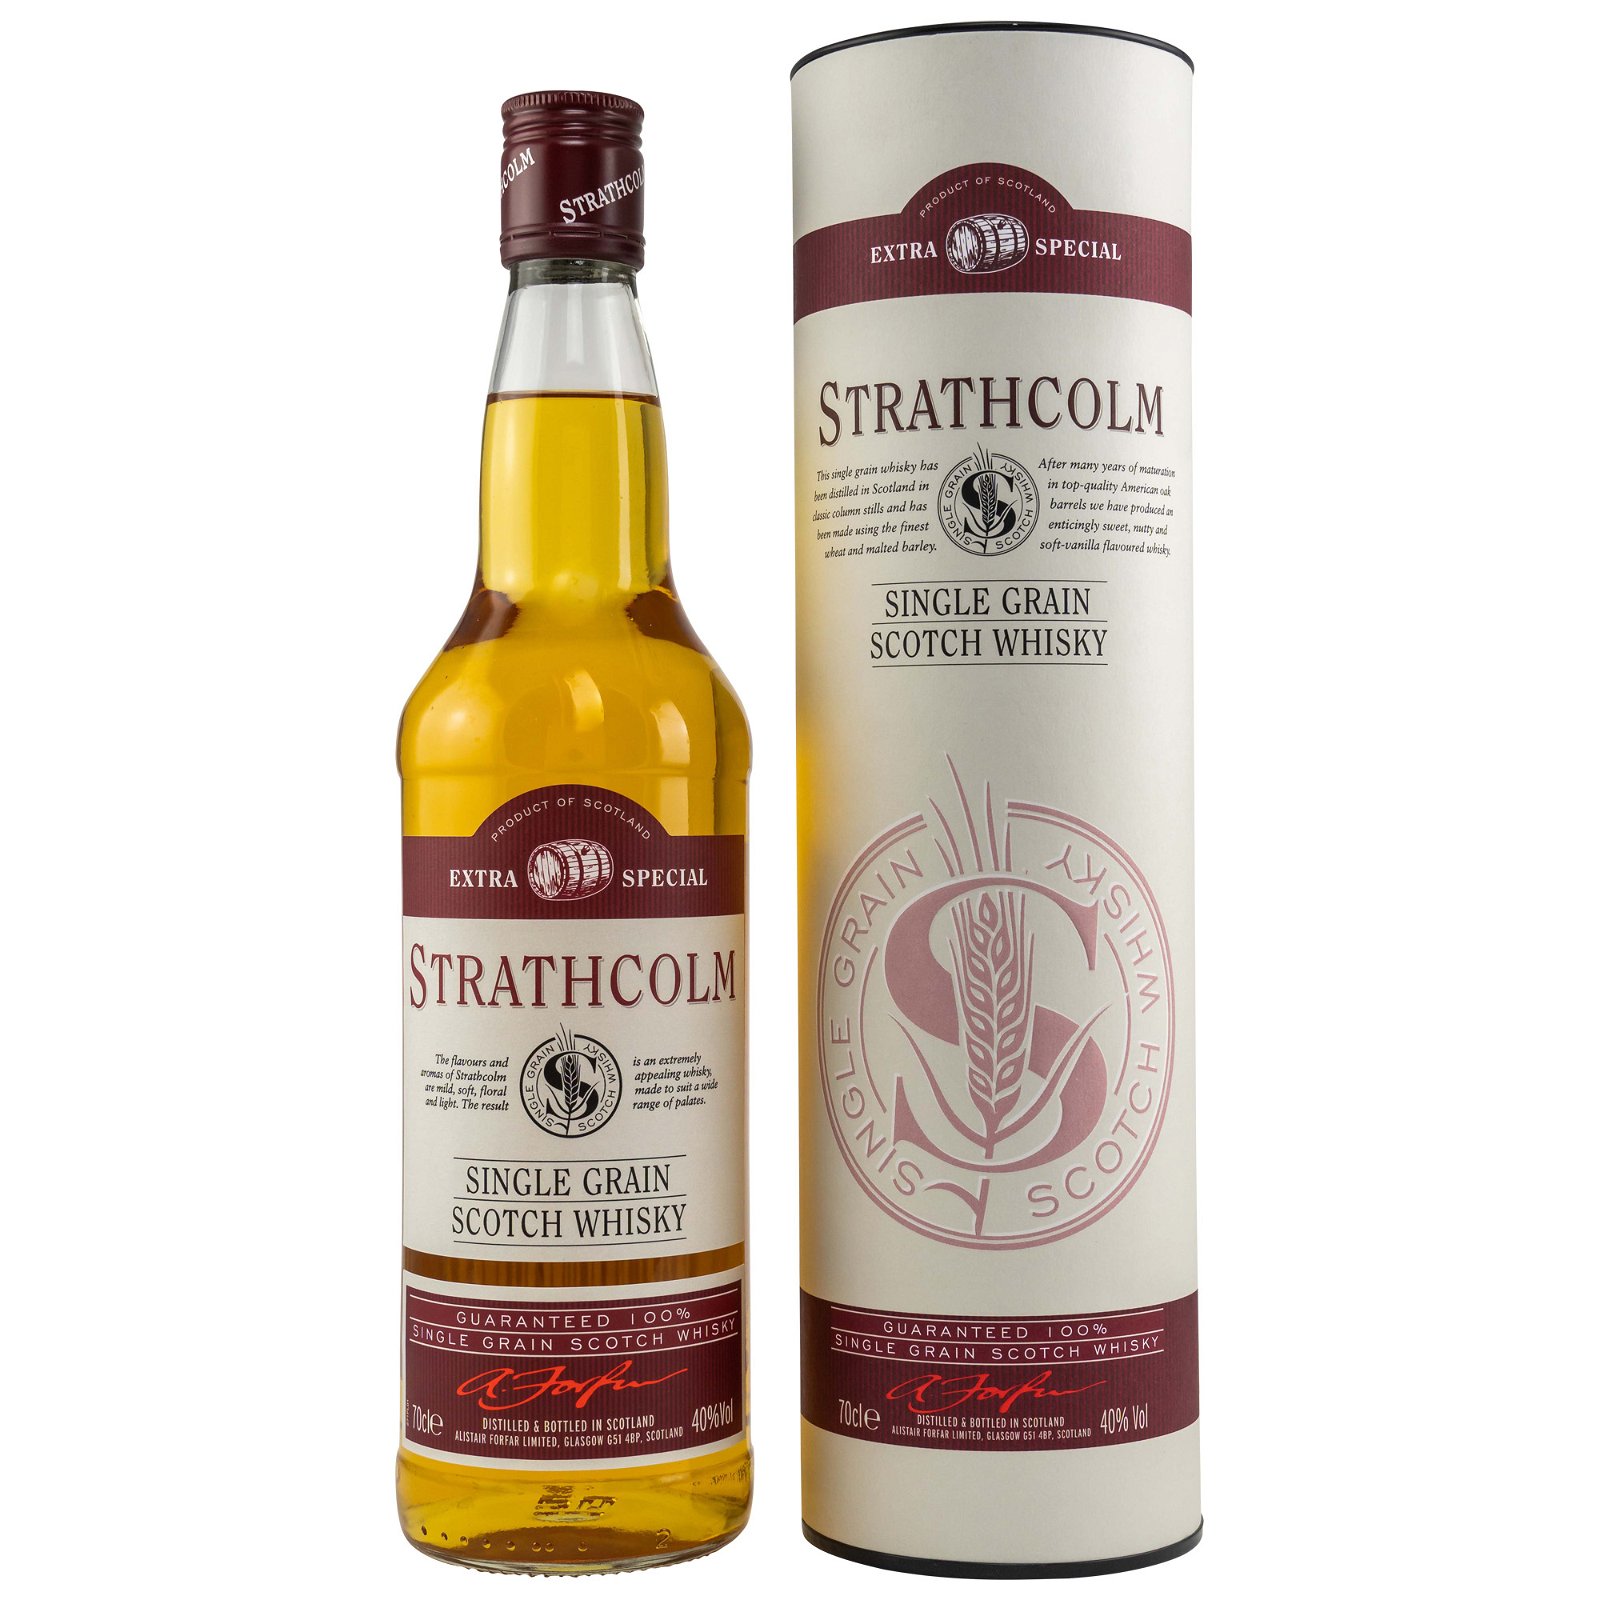 Strathcolm Single Grain Scotch Whisky 